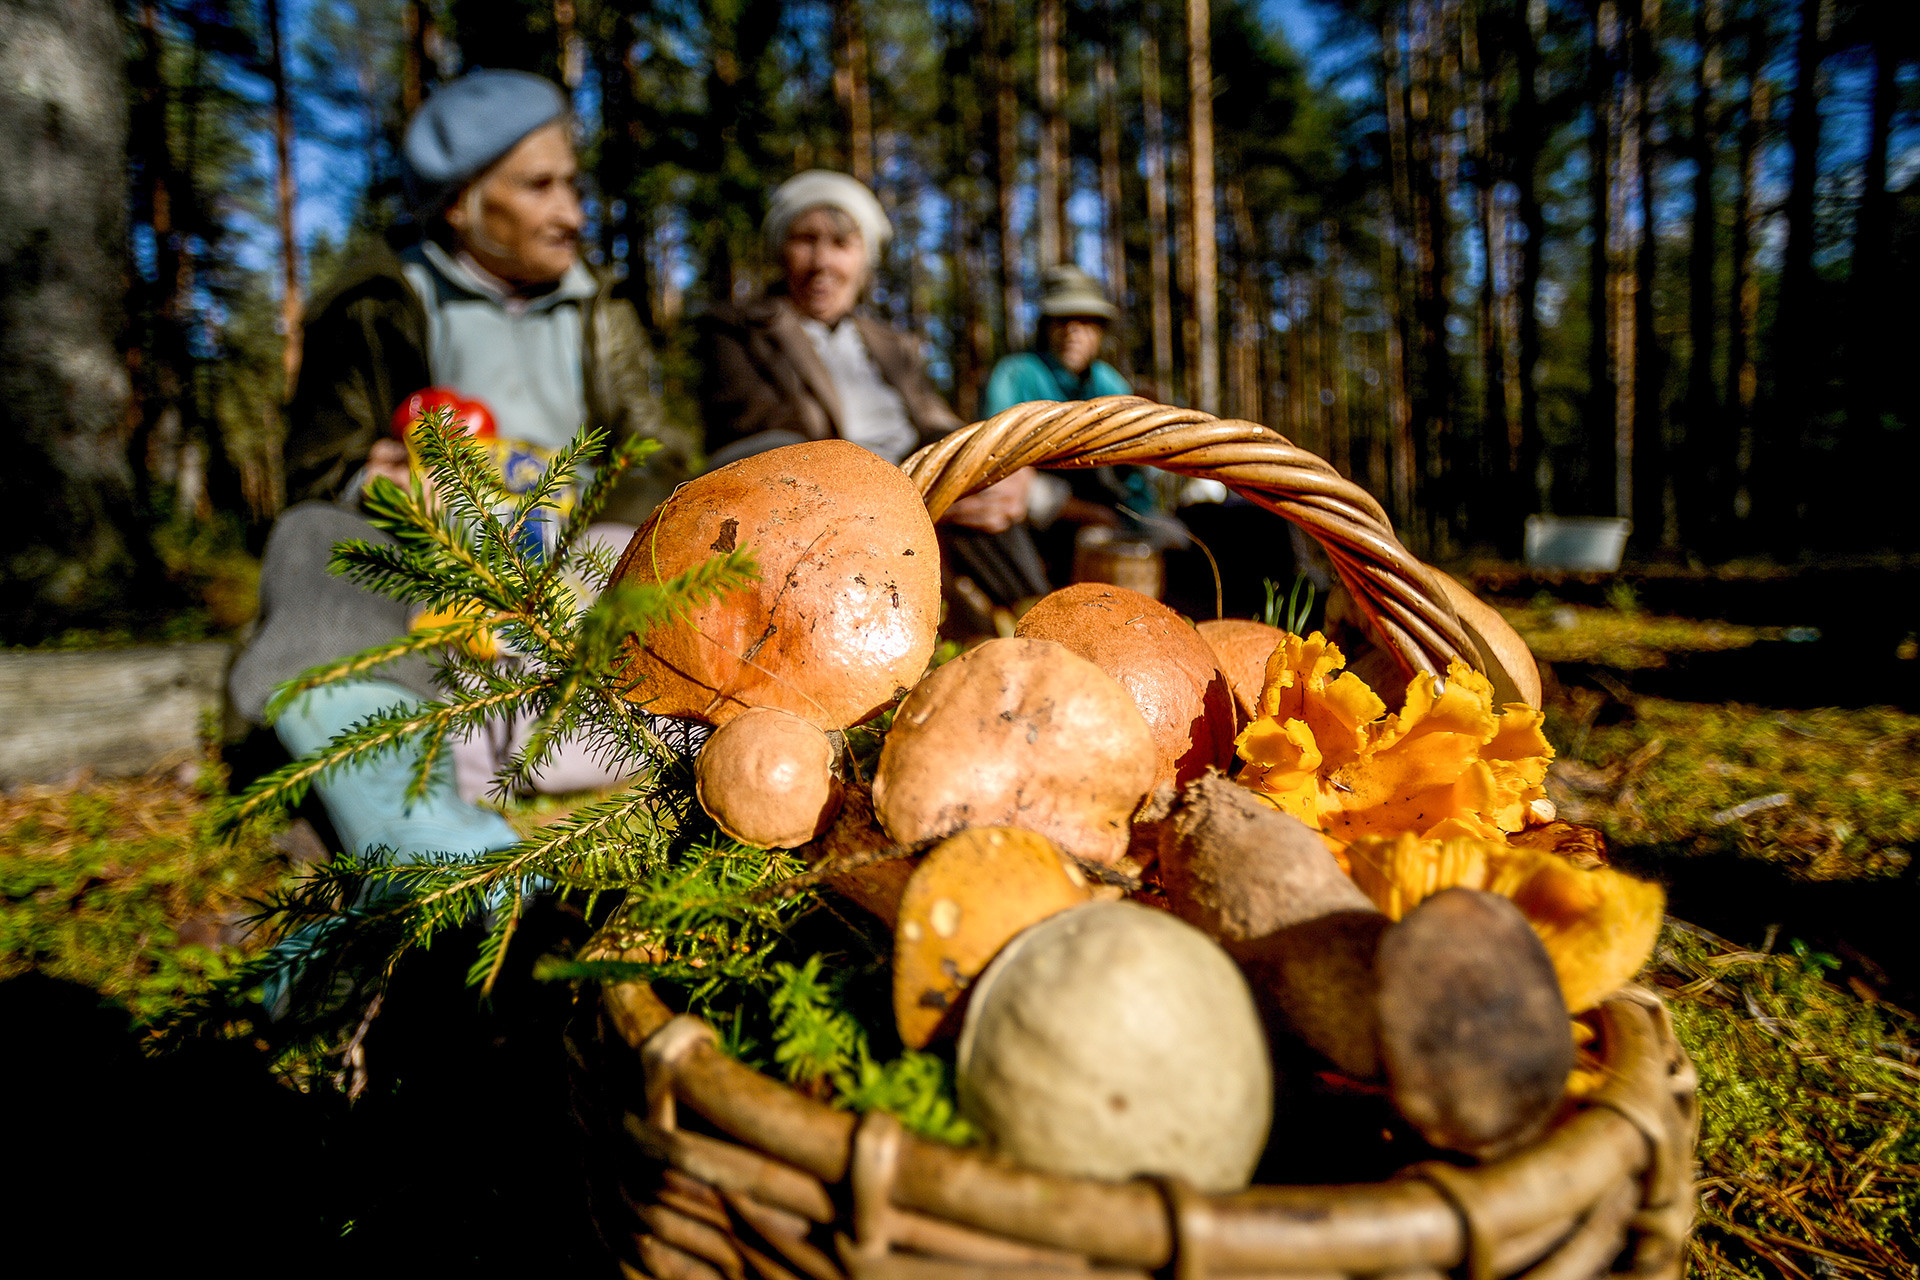 Babushkas selling mushrooms in the Novgorod Region.